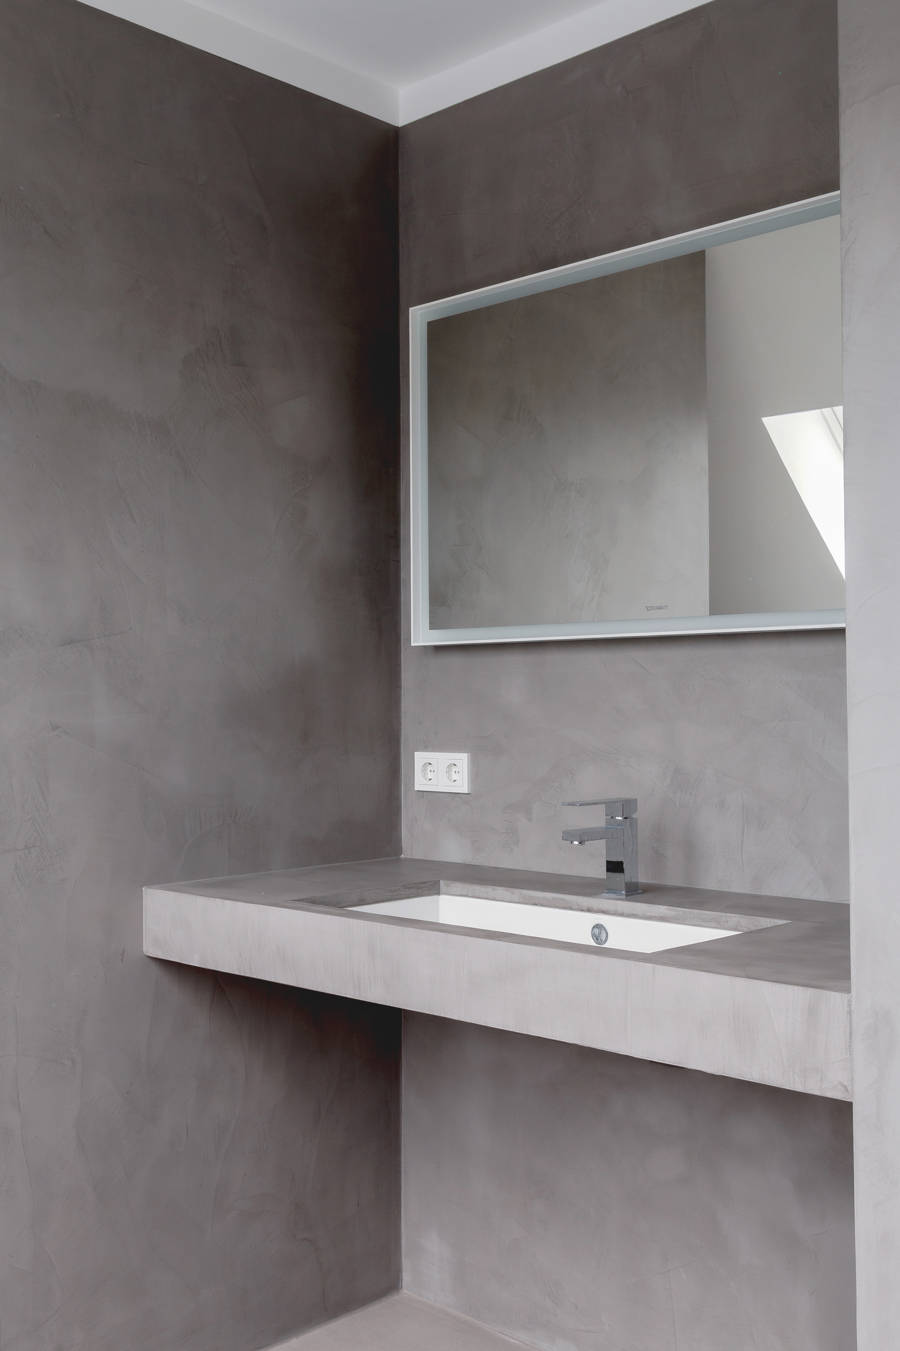 Salle de bain avec microciment gris sur les murs, le sol et le comptoir.